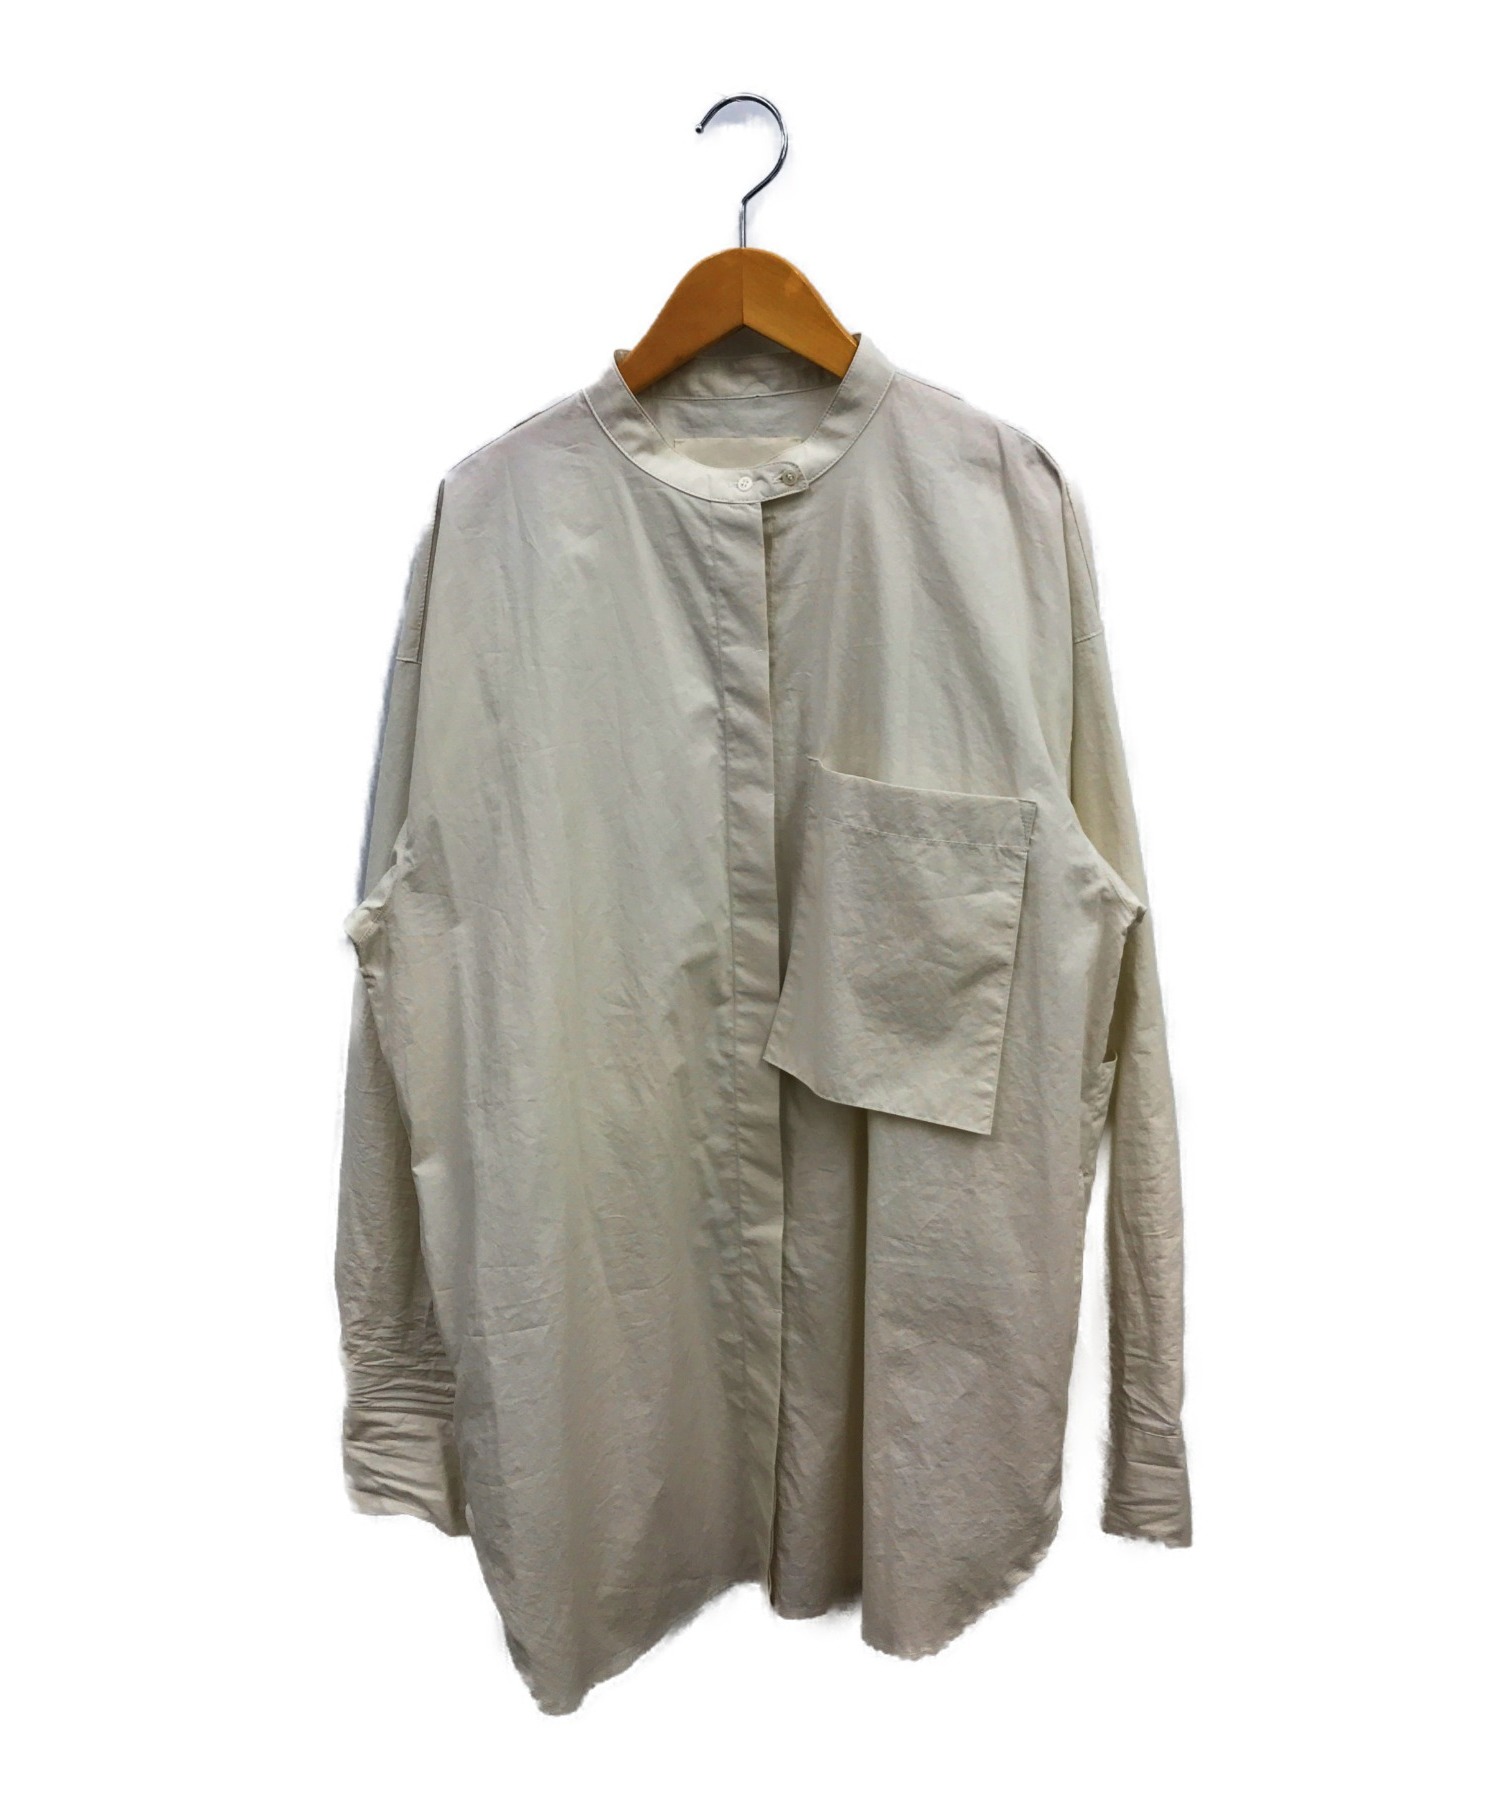 TODAYFUL (トゥデイフル) バックスリットシャツ アイボリー サイズ:F 12020404 Back Slit Shirts